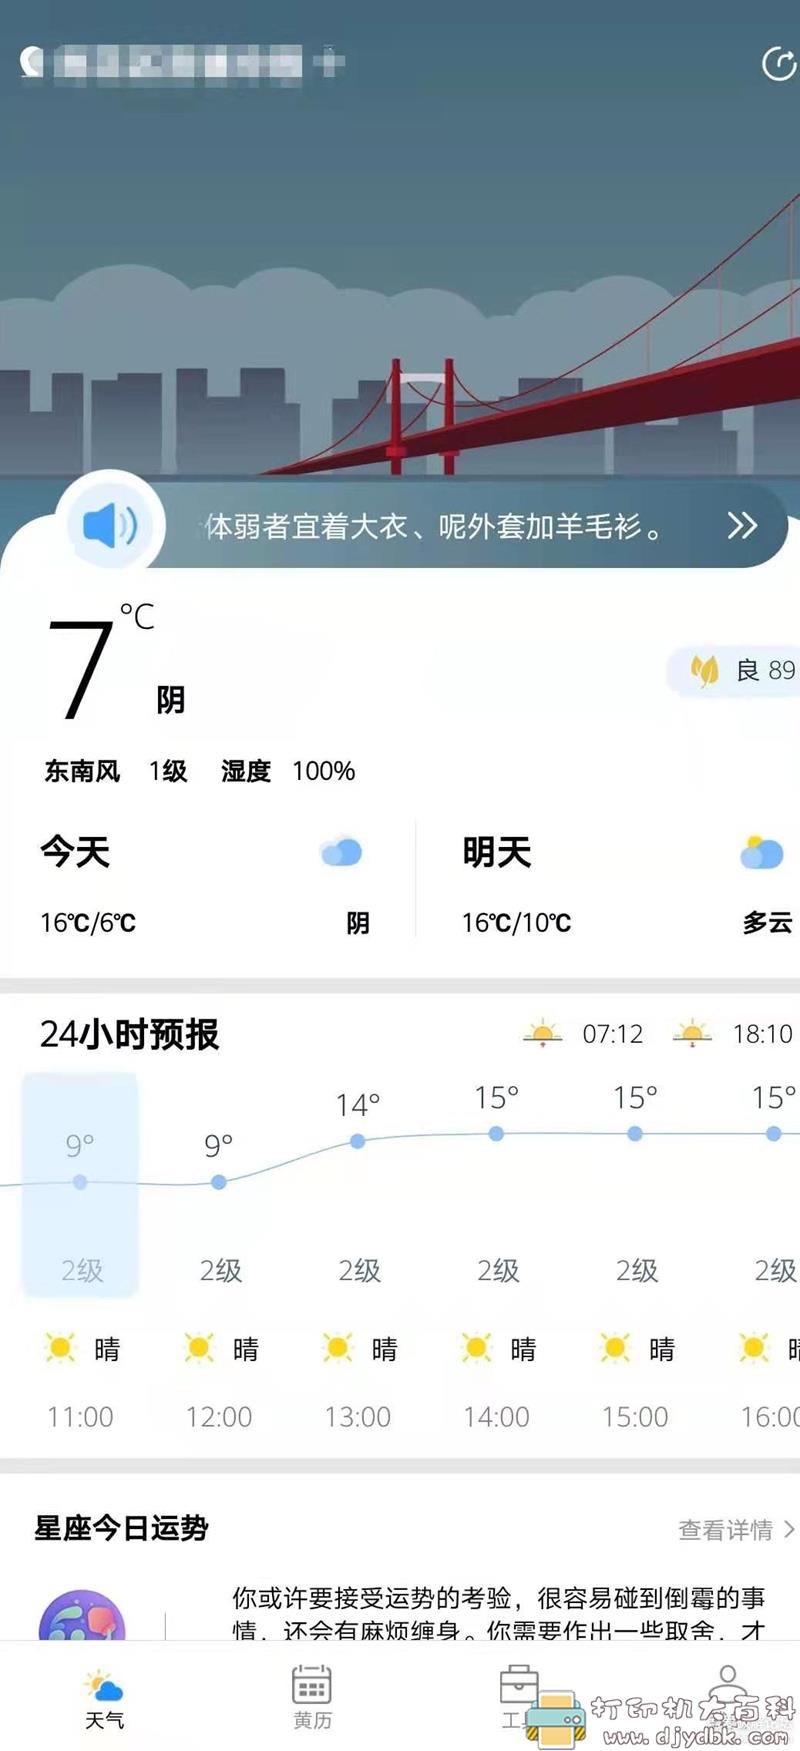 [Android]【天气预报app】好天气V2.2.2 配图 No.1